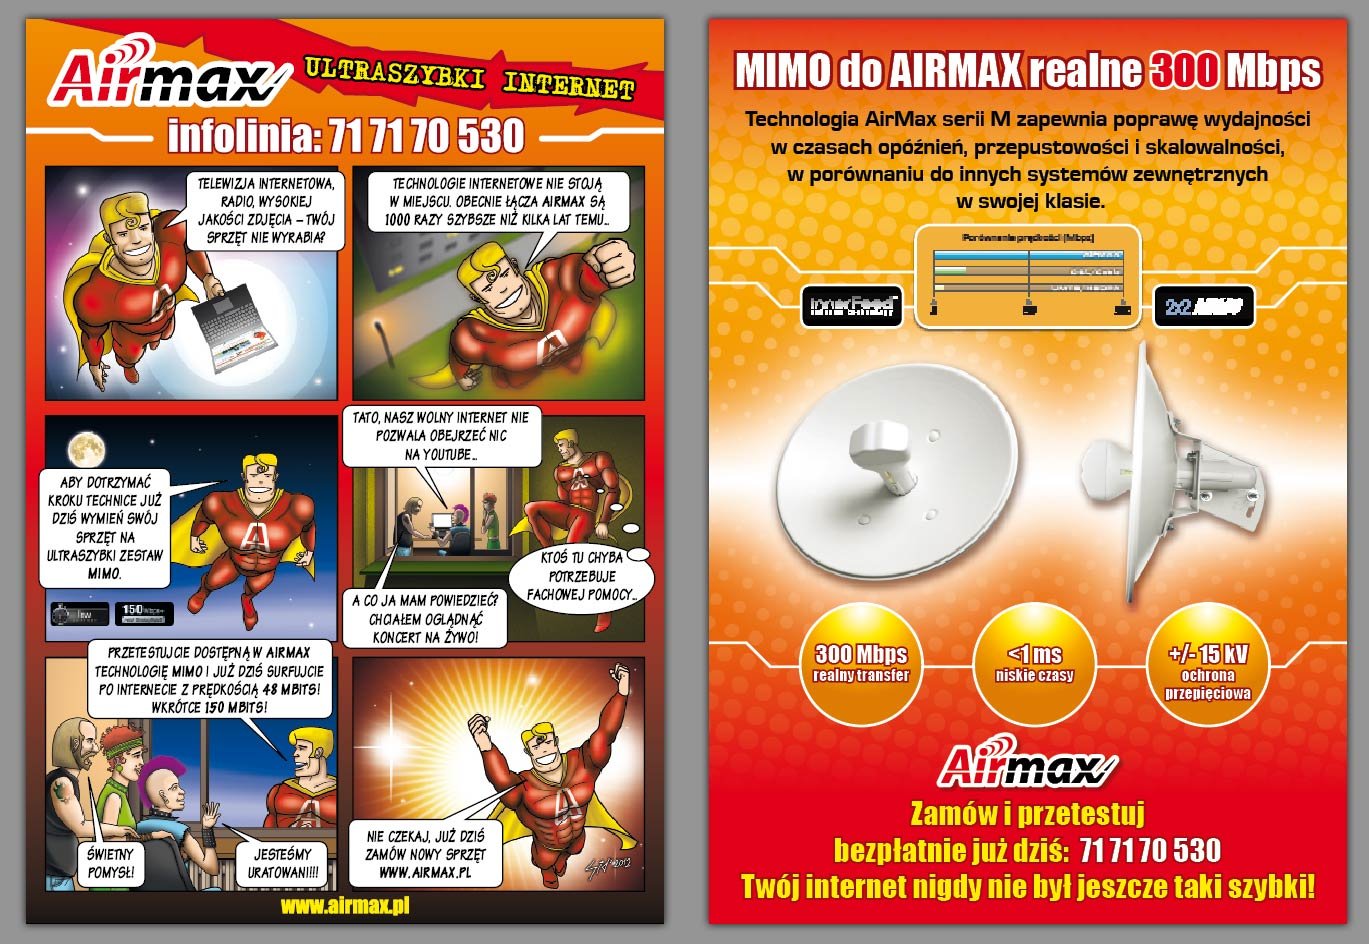 Airmax internet - telewizja internetowa